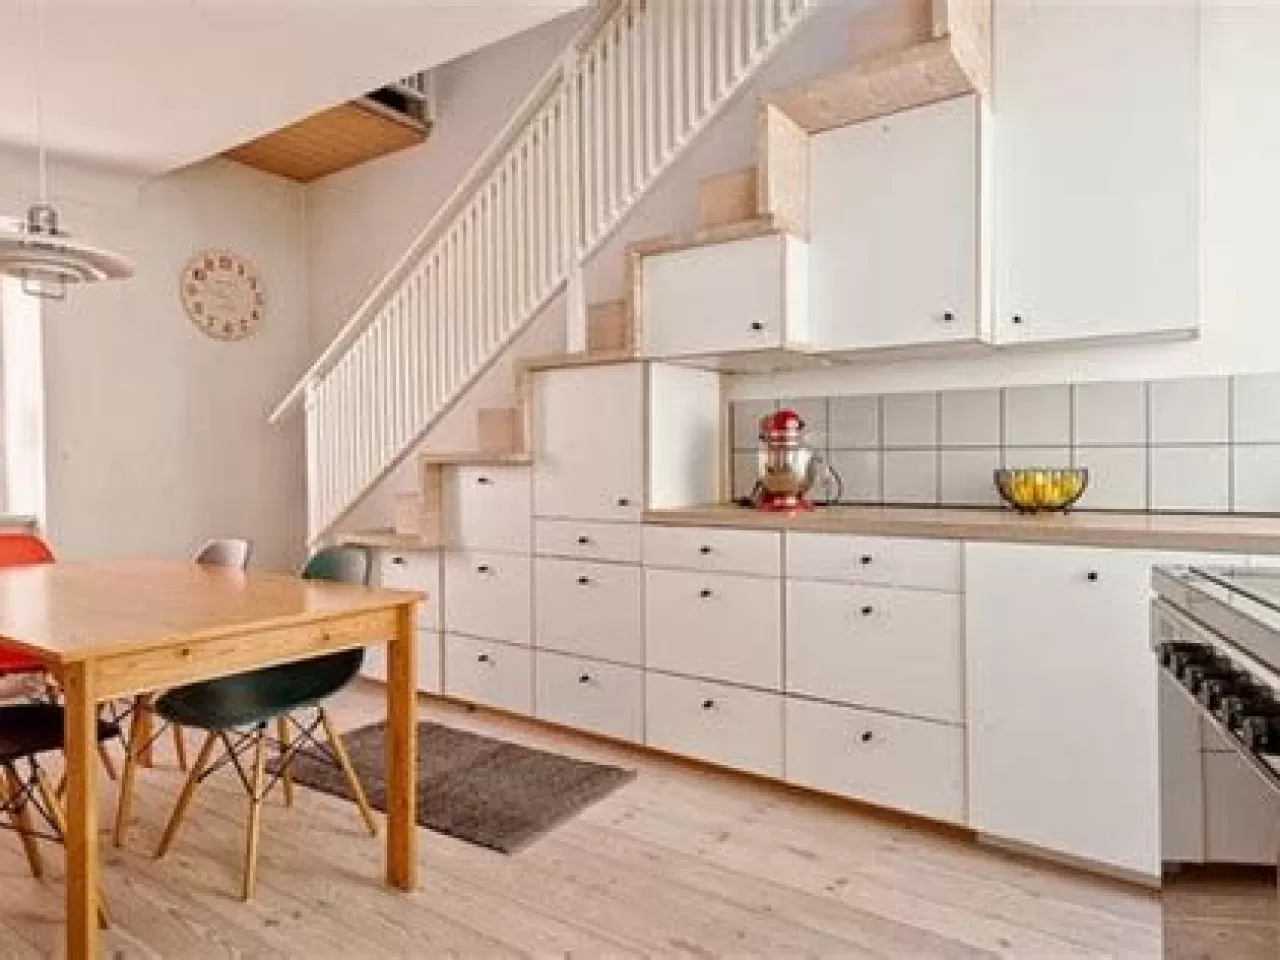 Второй этаж на кухне. Кухня под лестницей. Угловая кухня под лестницей. Кухонный гарнитур под лестницей. Проект кухни под лестницей.